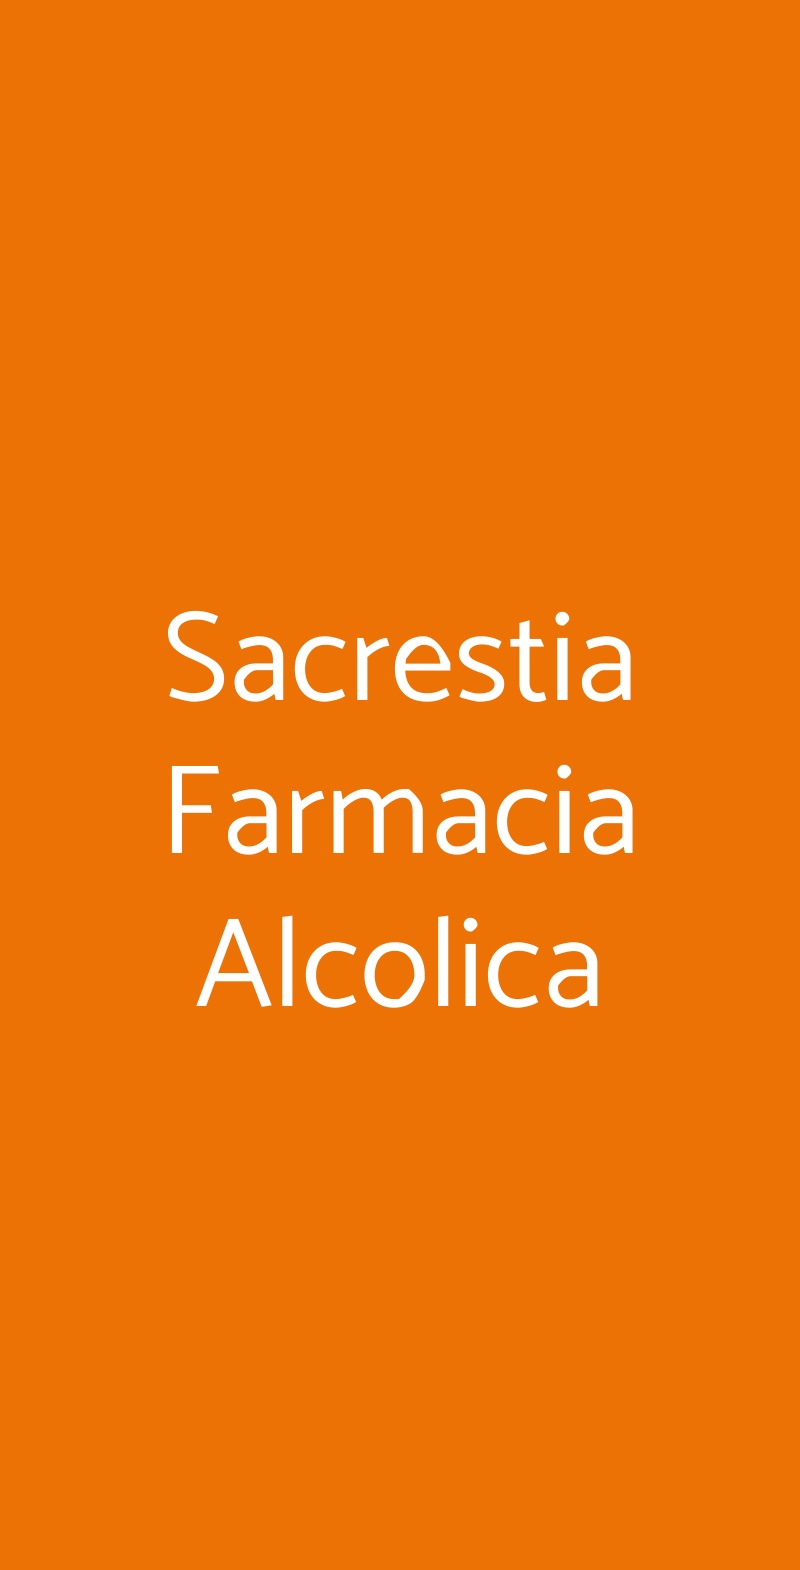 Sacrestia Farmacia Alcolica Milano menù 1 pagina